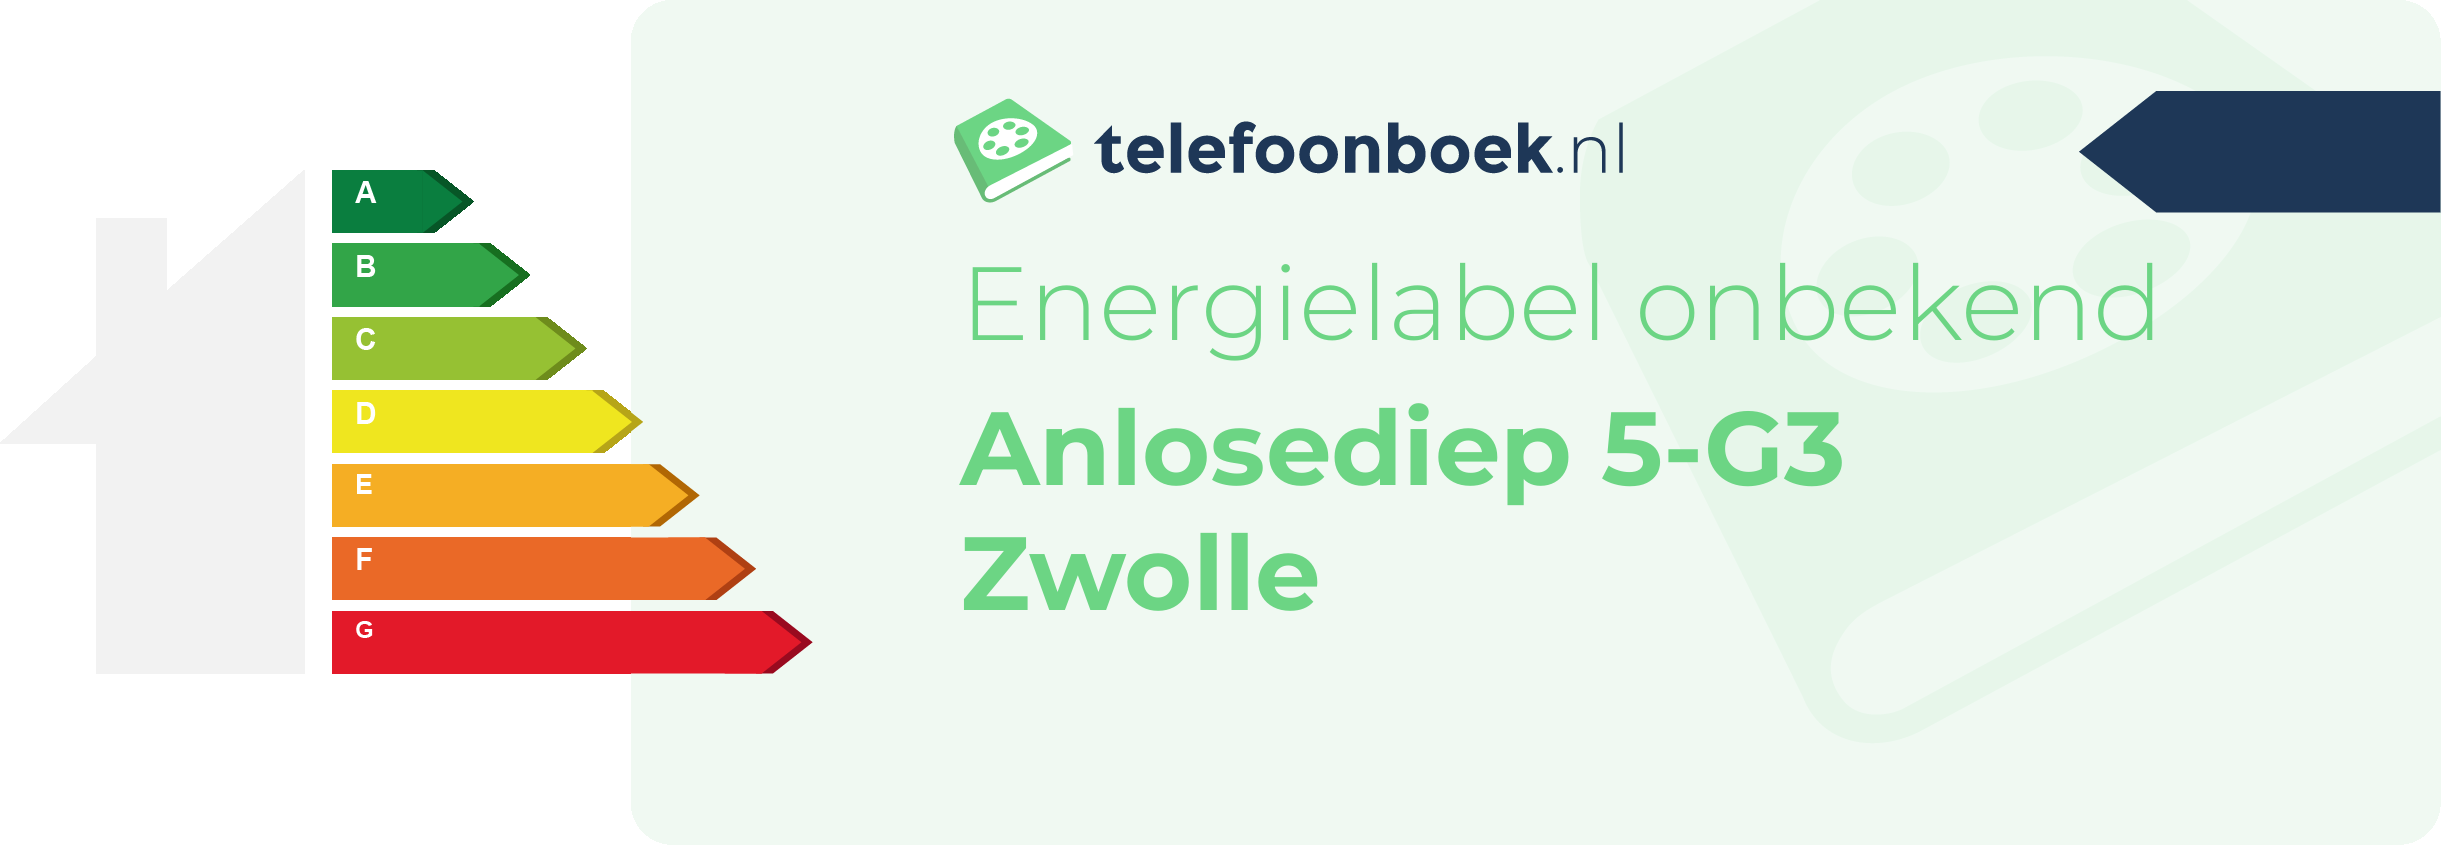 Energielabel Anlosediep 5-G3 Zwolle